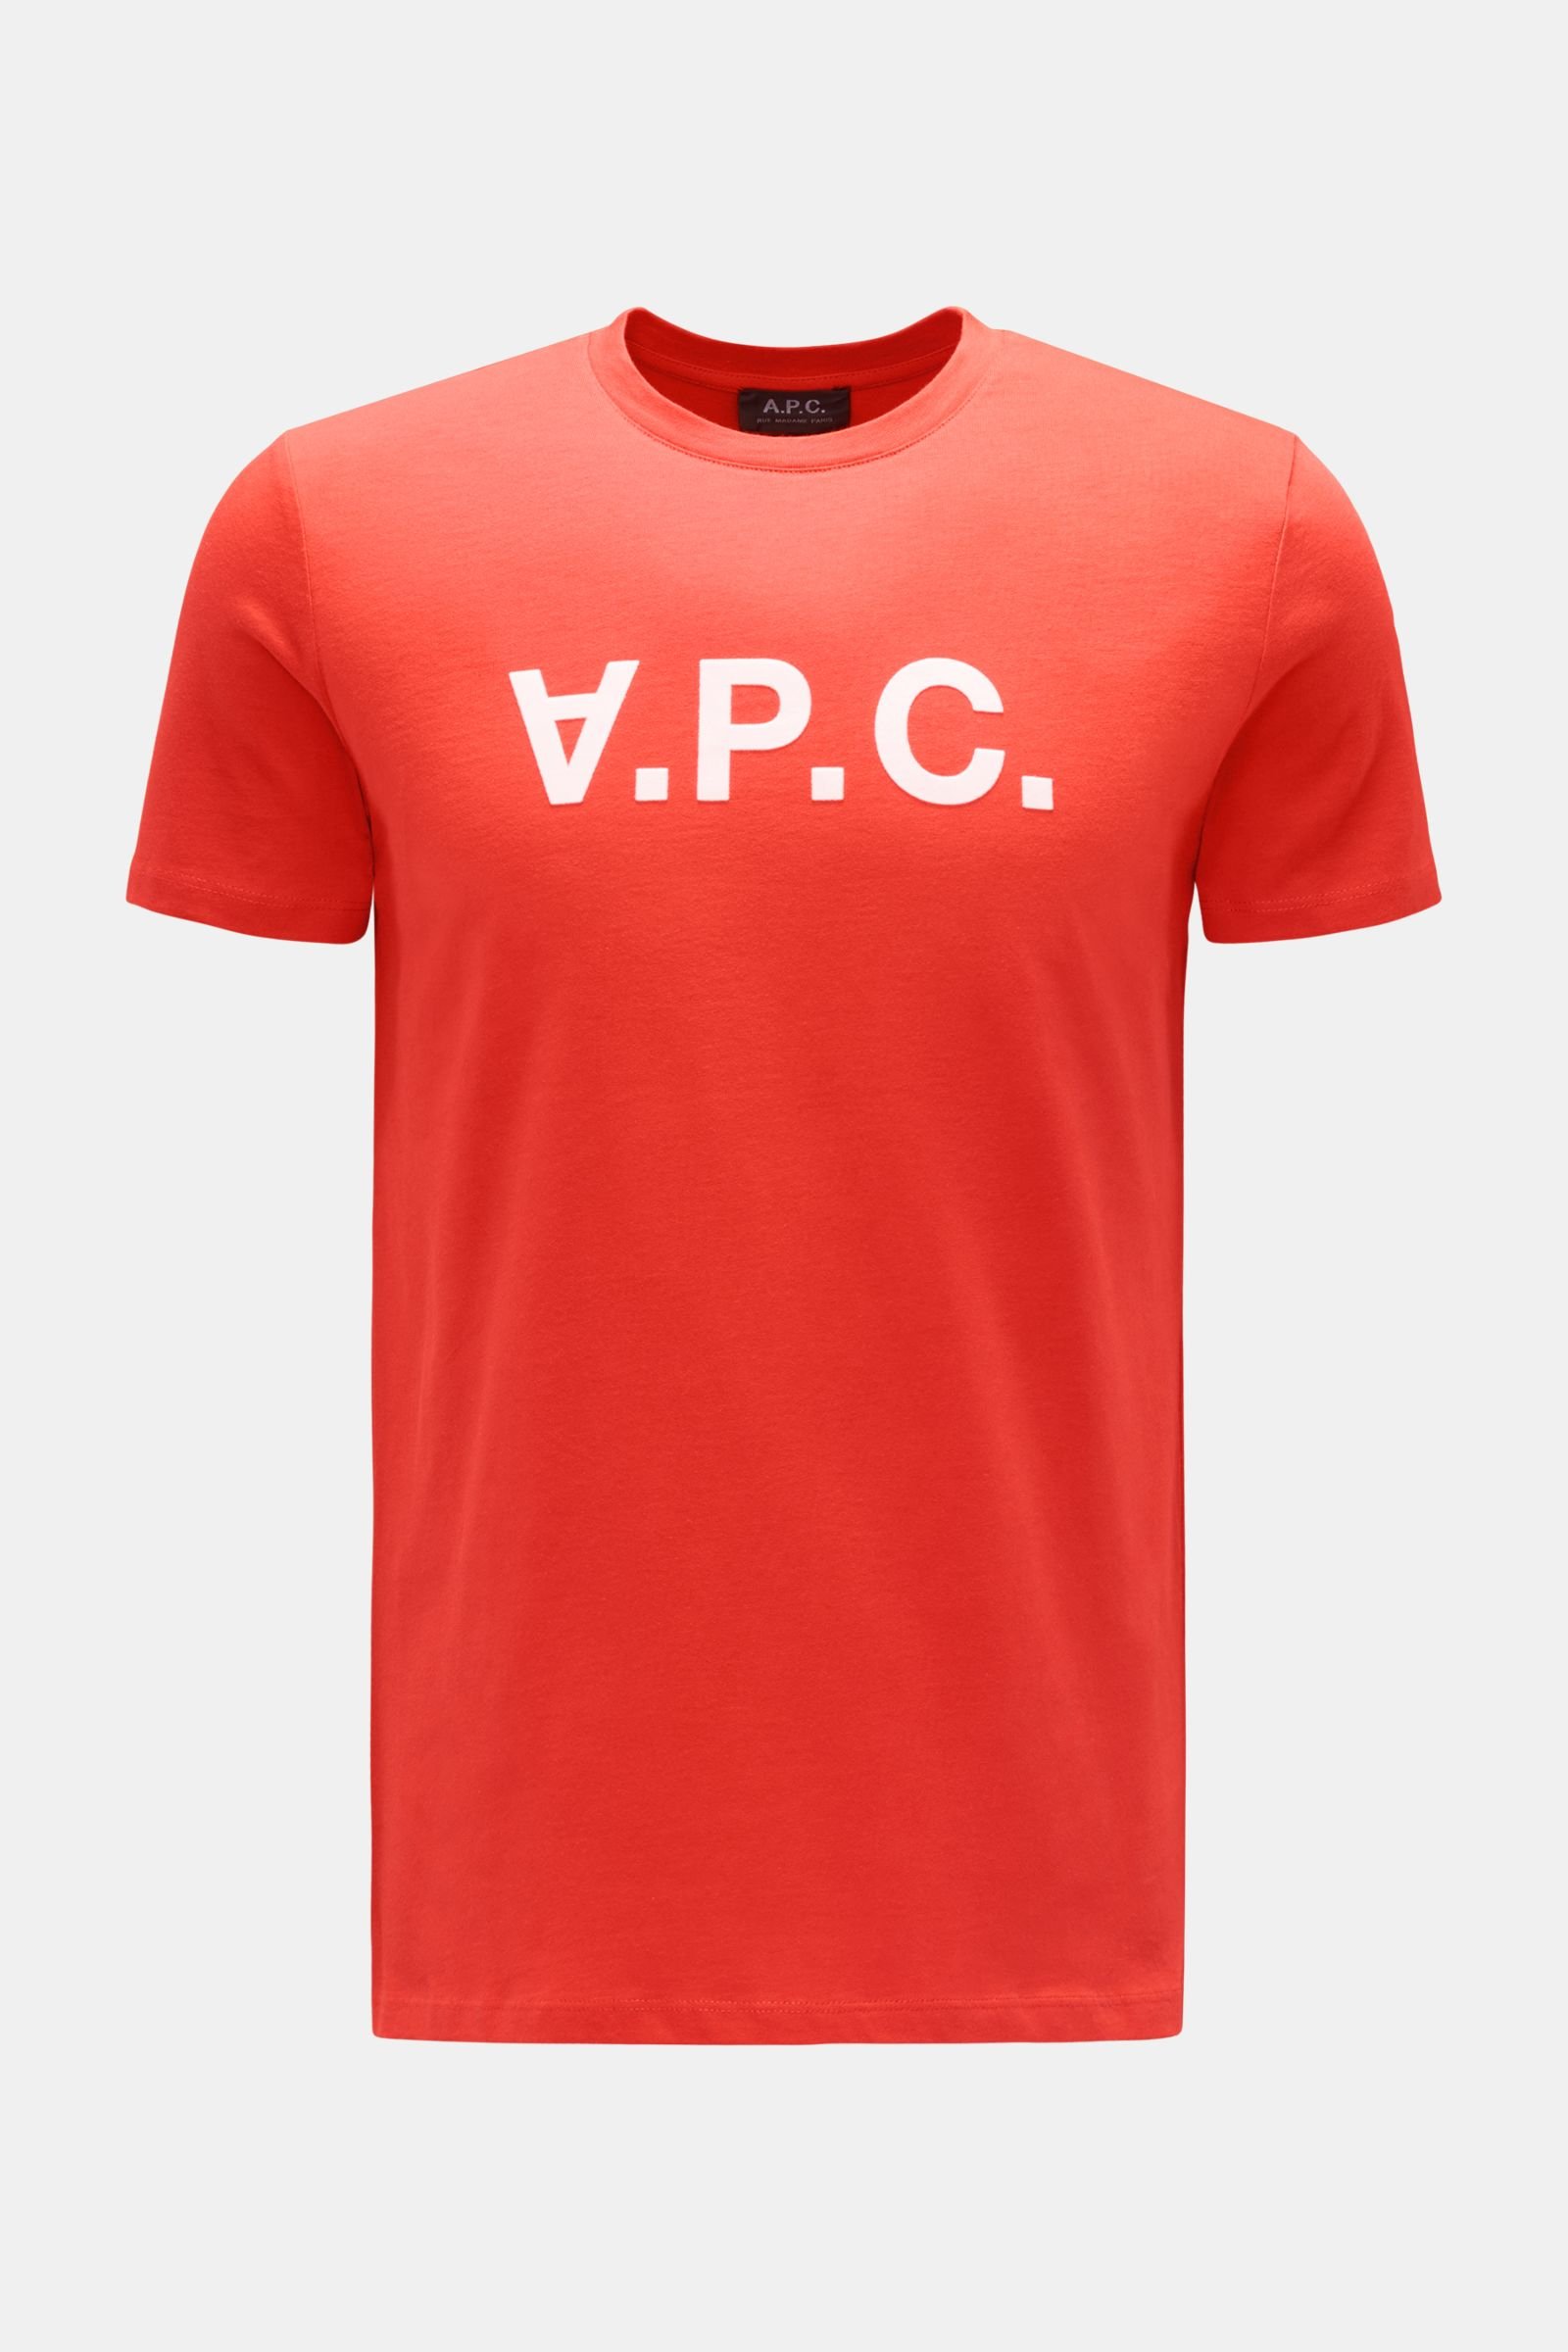 Rundhals-T-Shirt 'VPC' rot